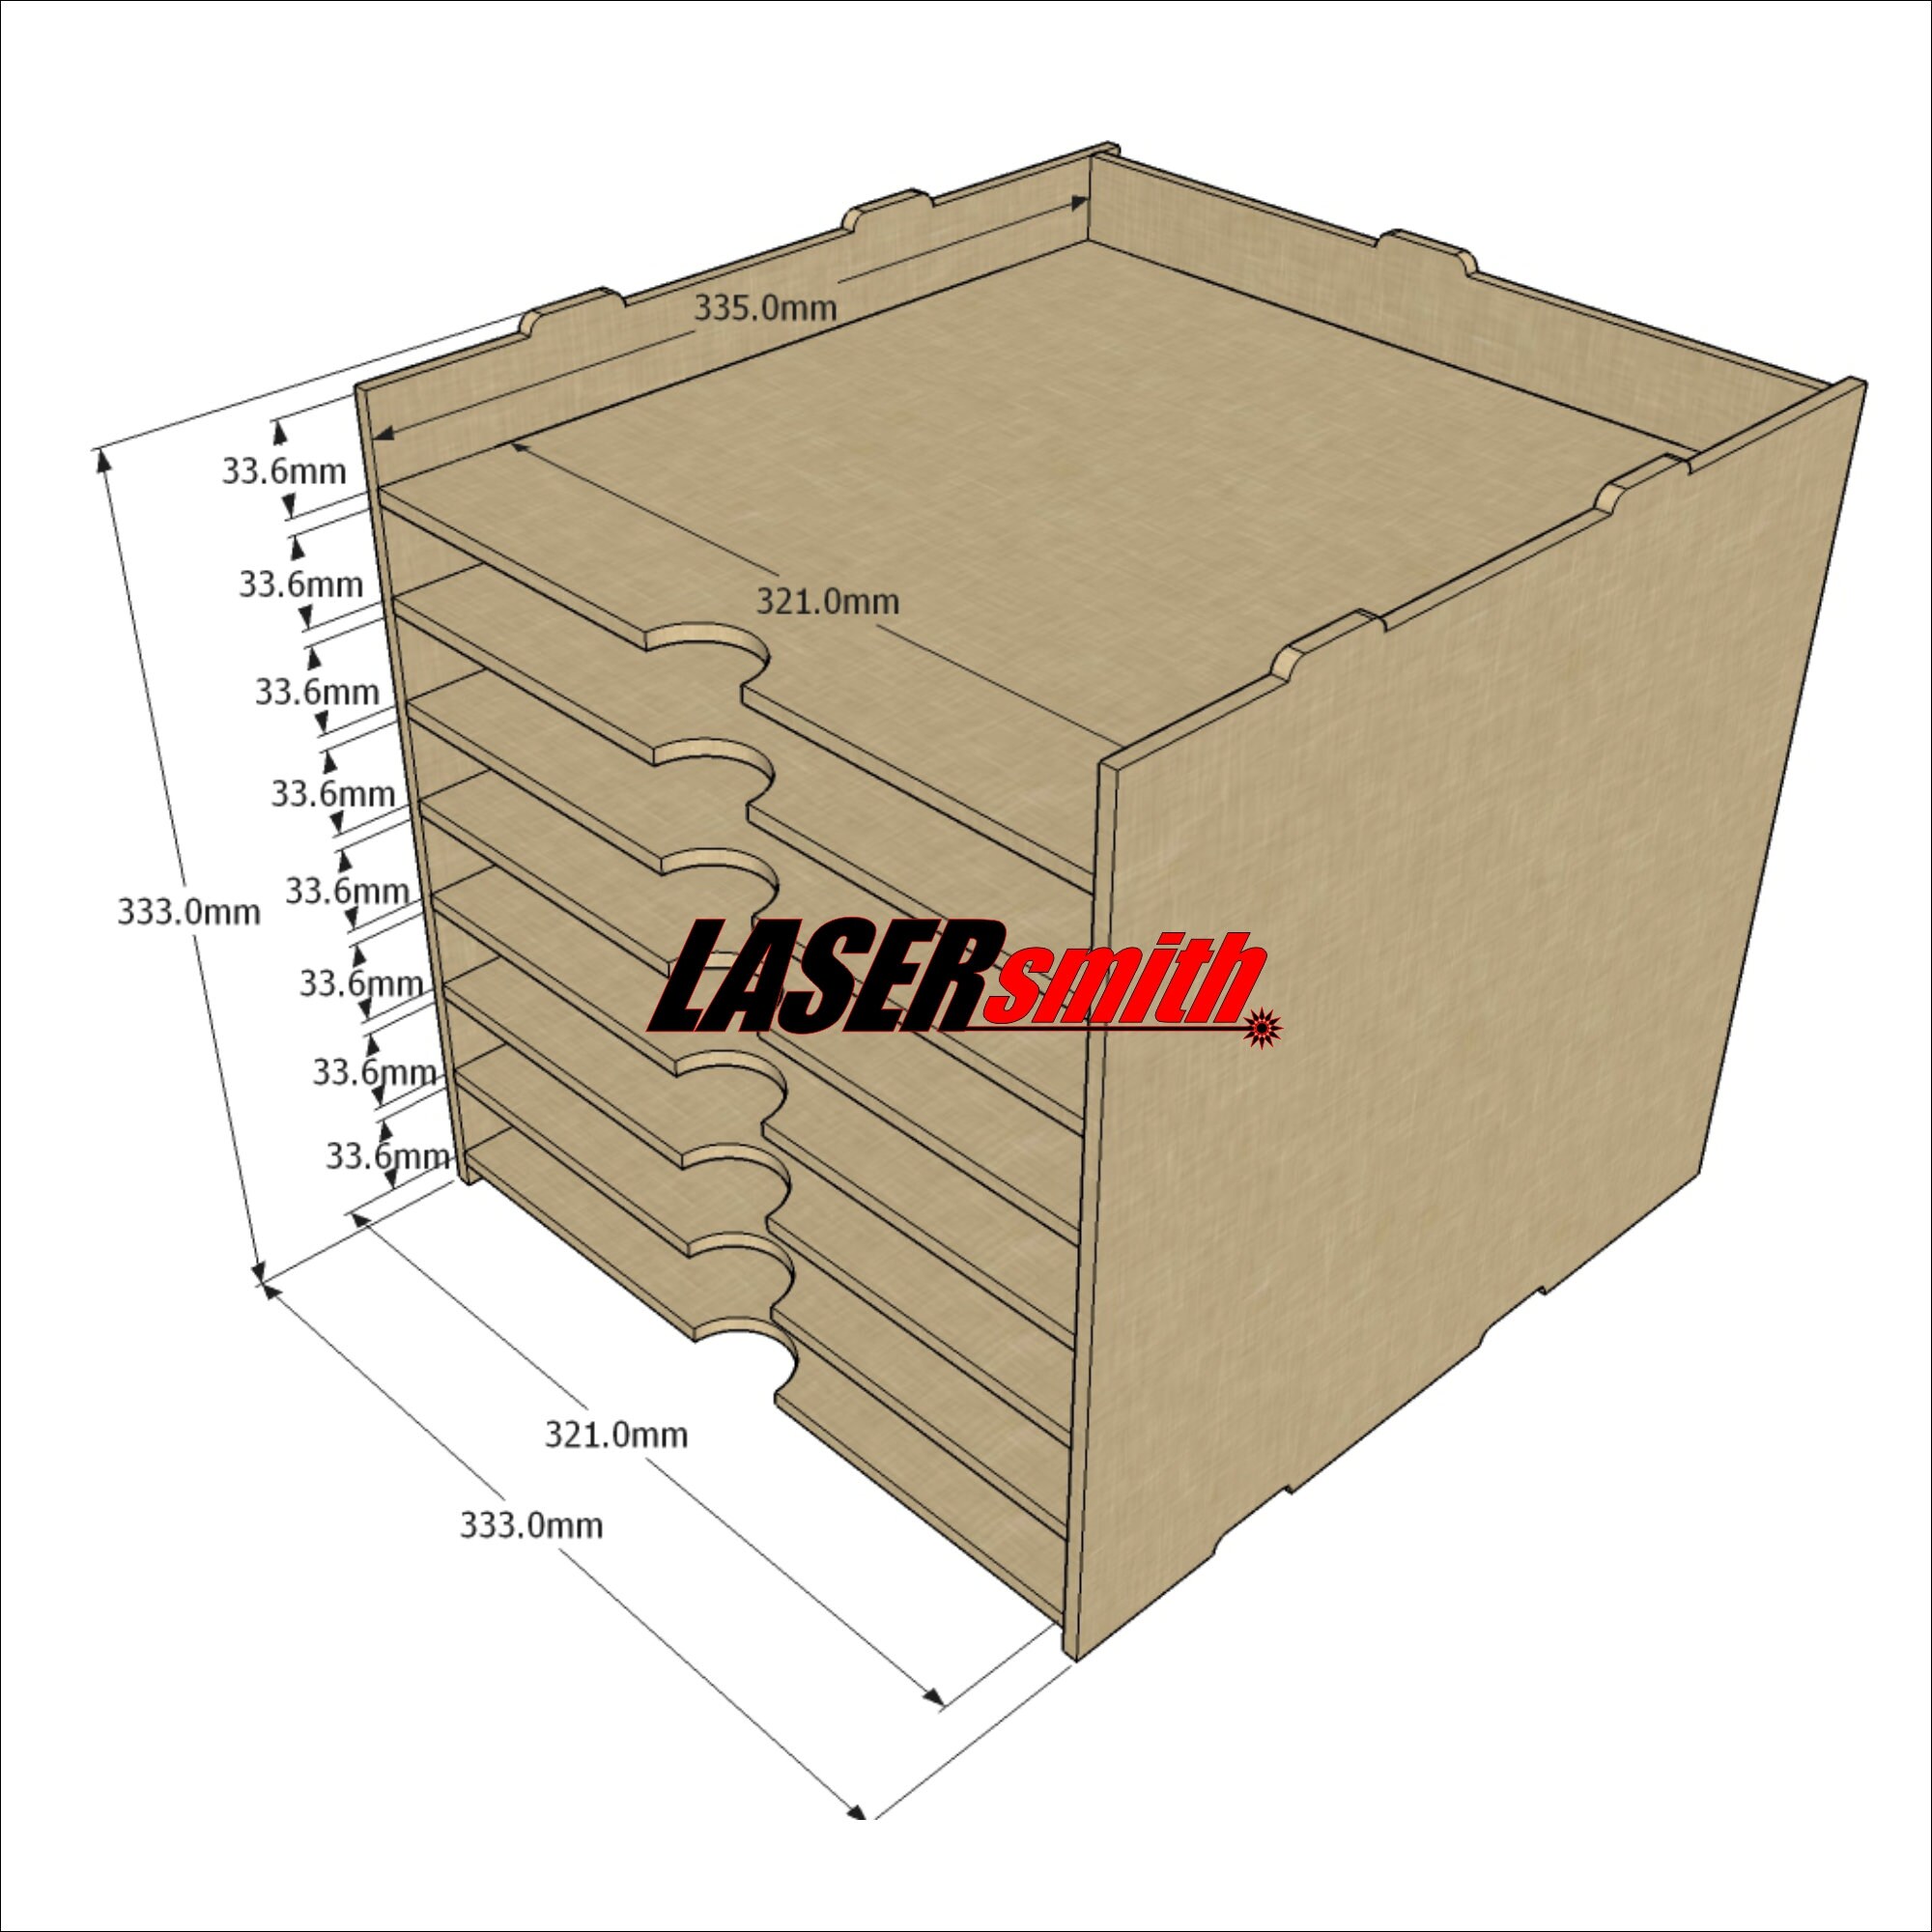 LaserSmith - 6 Shelf Kallax Storage for 12x12 Plastic Storage Containers